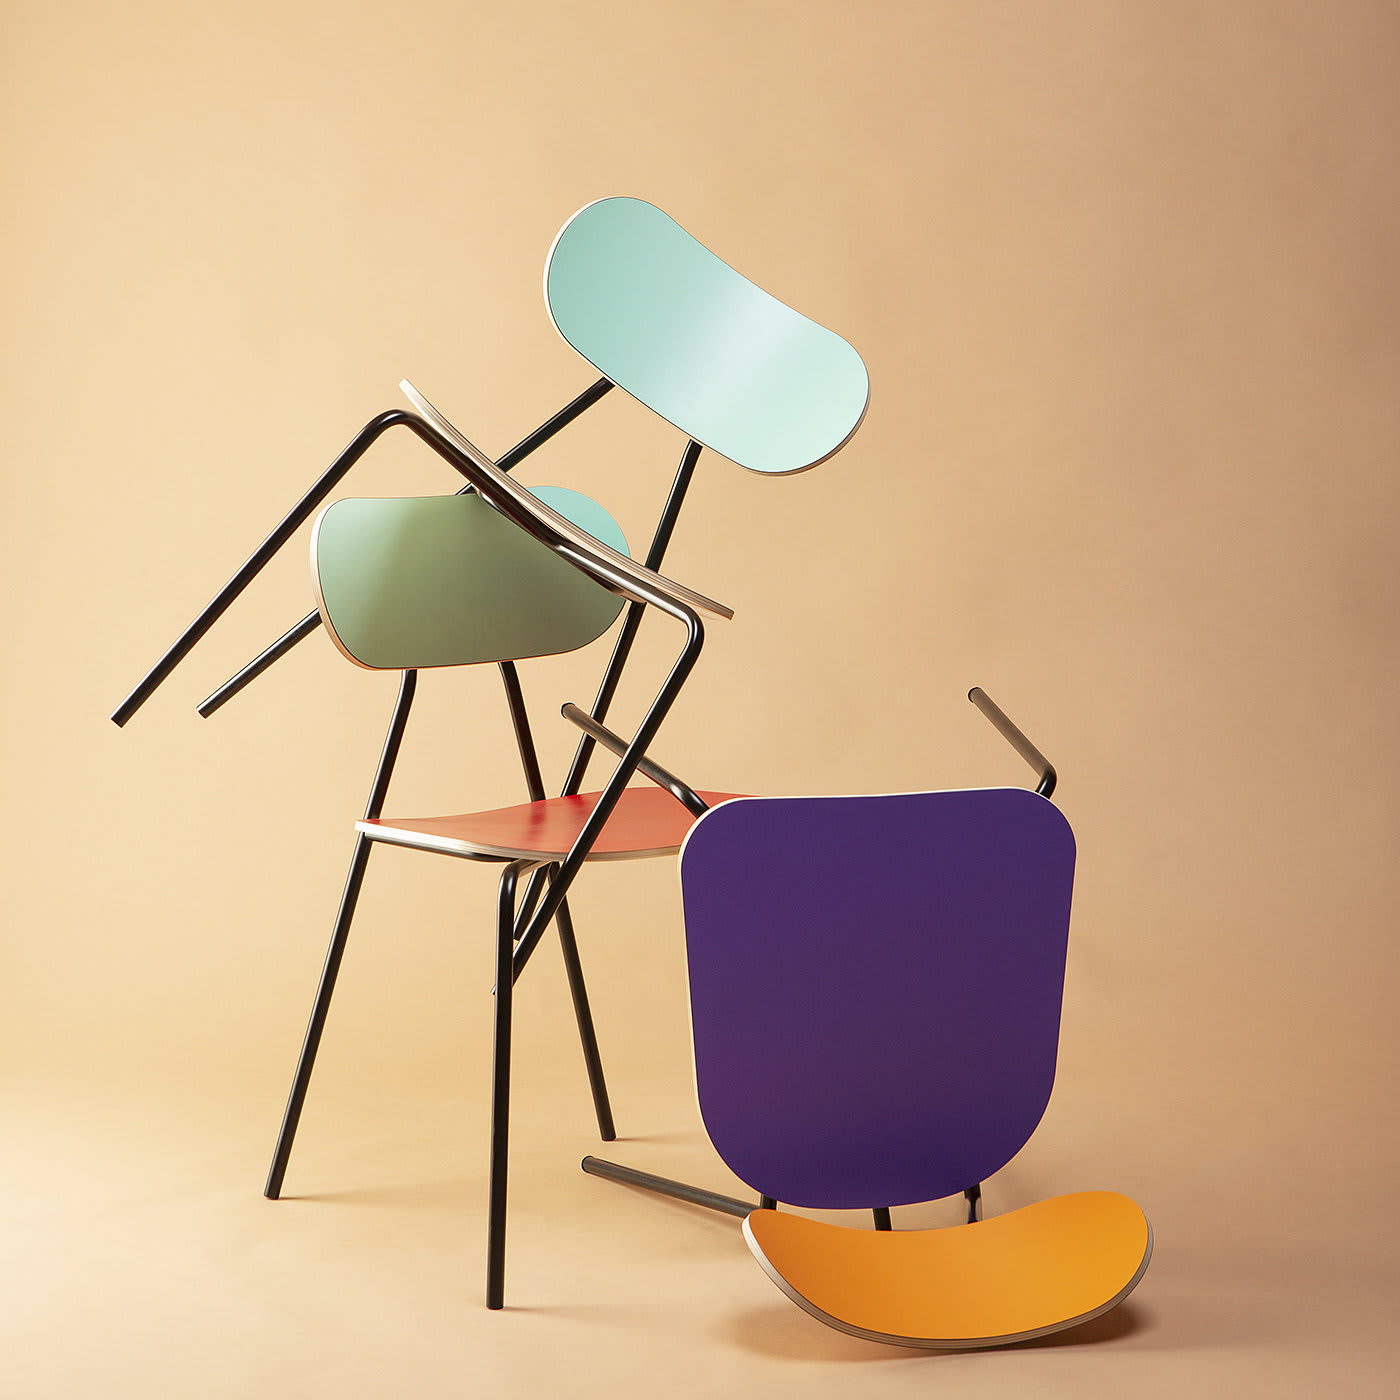 Lombrella Chair by Andrea Forapani - Lombrello